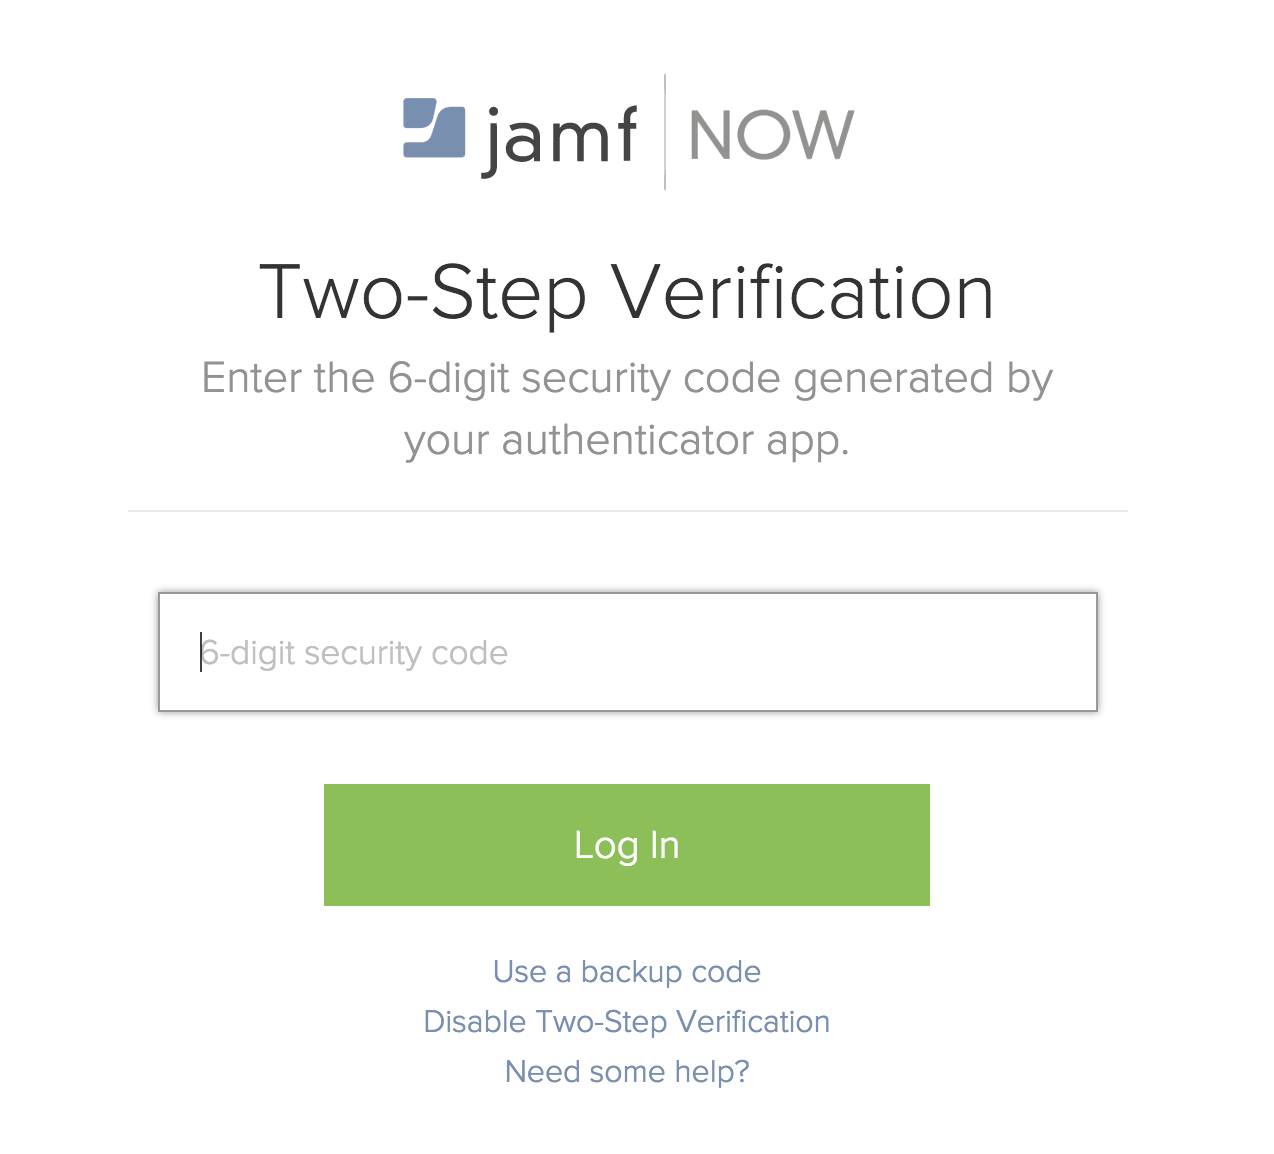 Captura de pantalla de la verificación en dos pasos, con un campo para introducir tu código de seguridad de 6 dígitos.